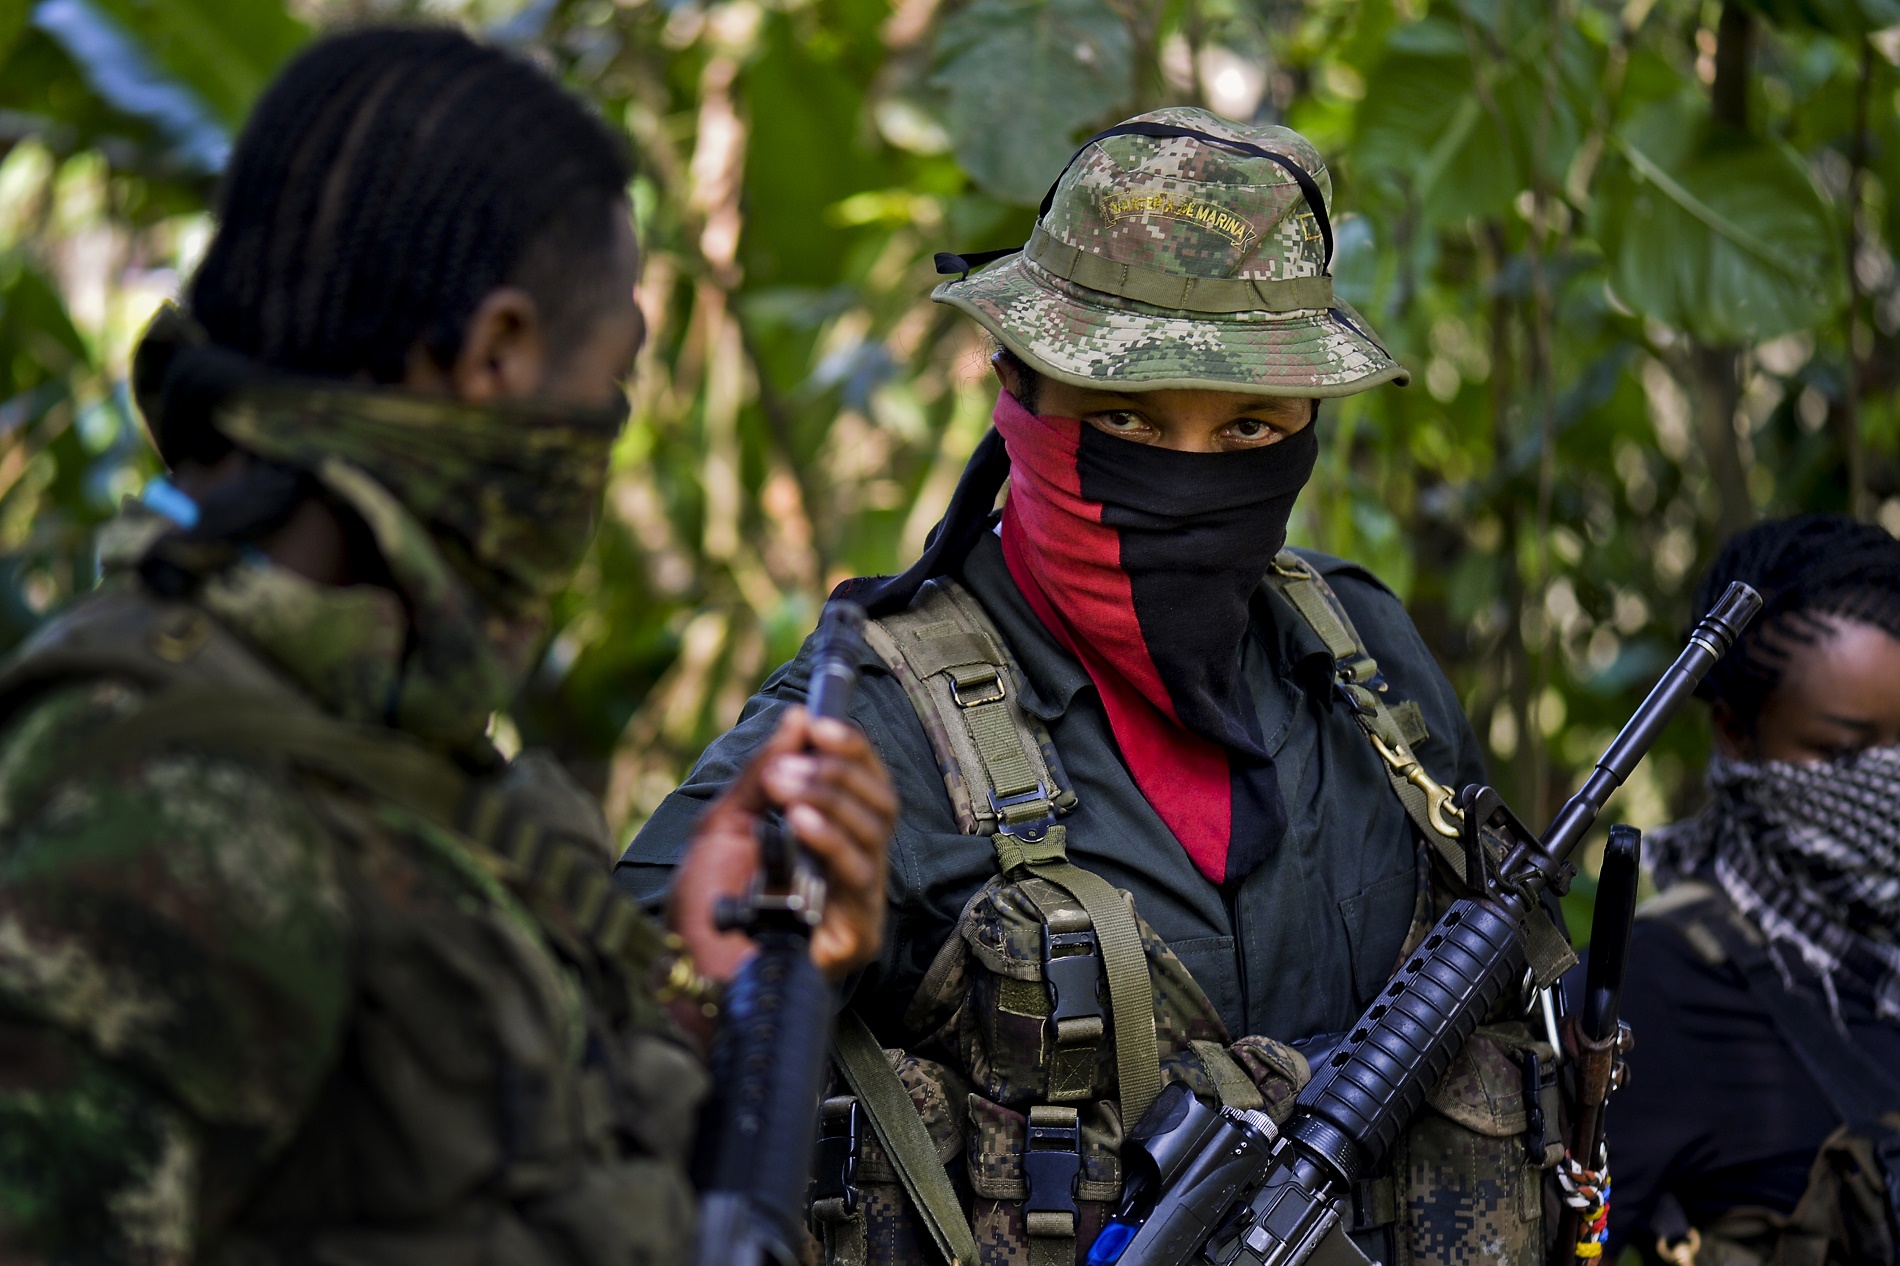 La lucha armada “tiene plena vigencia” en Colombia, afirma comandante de ELN